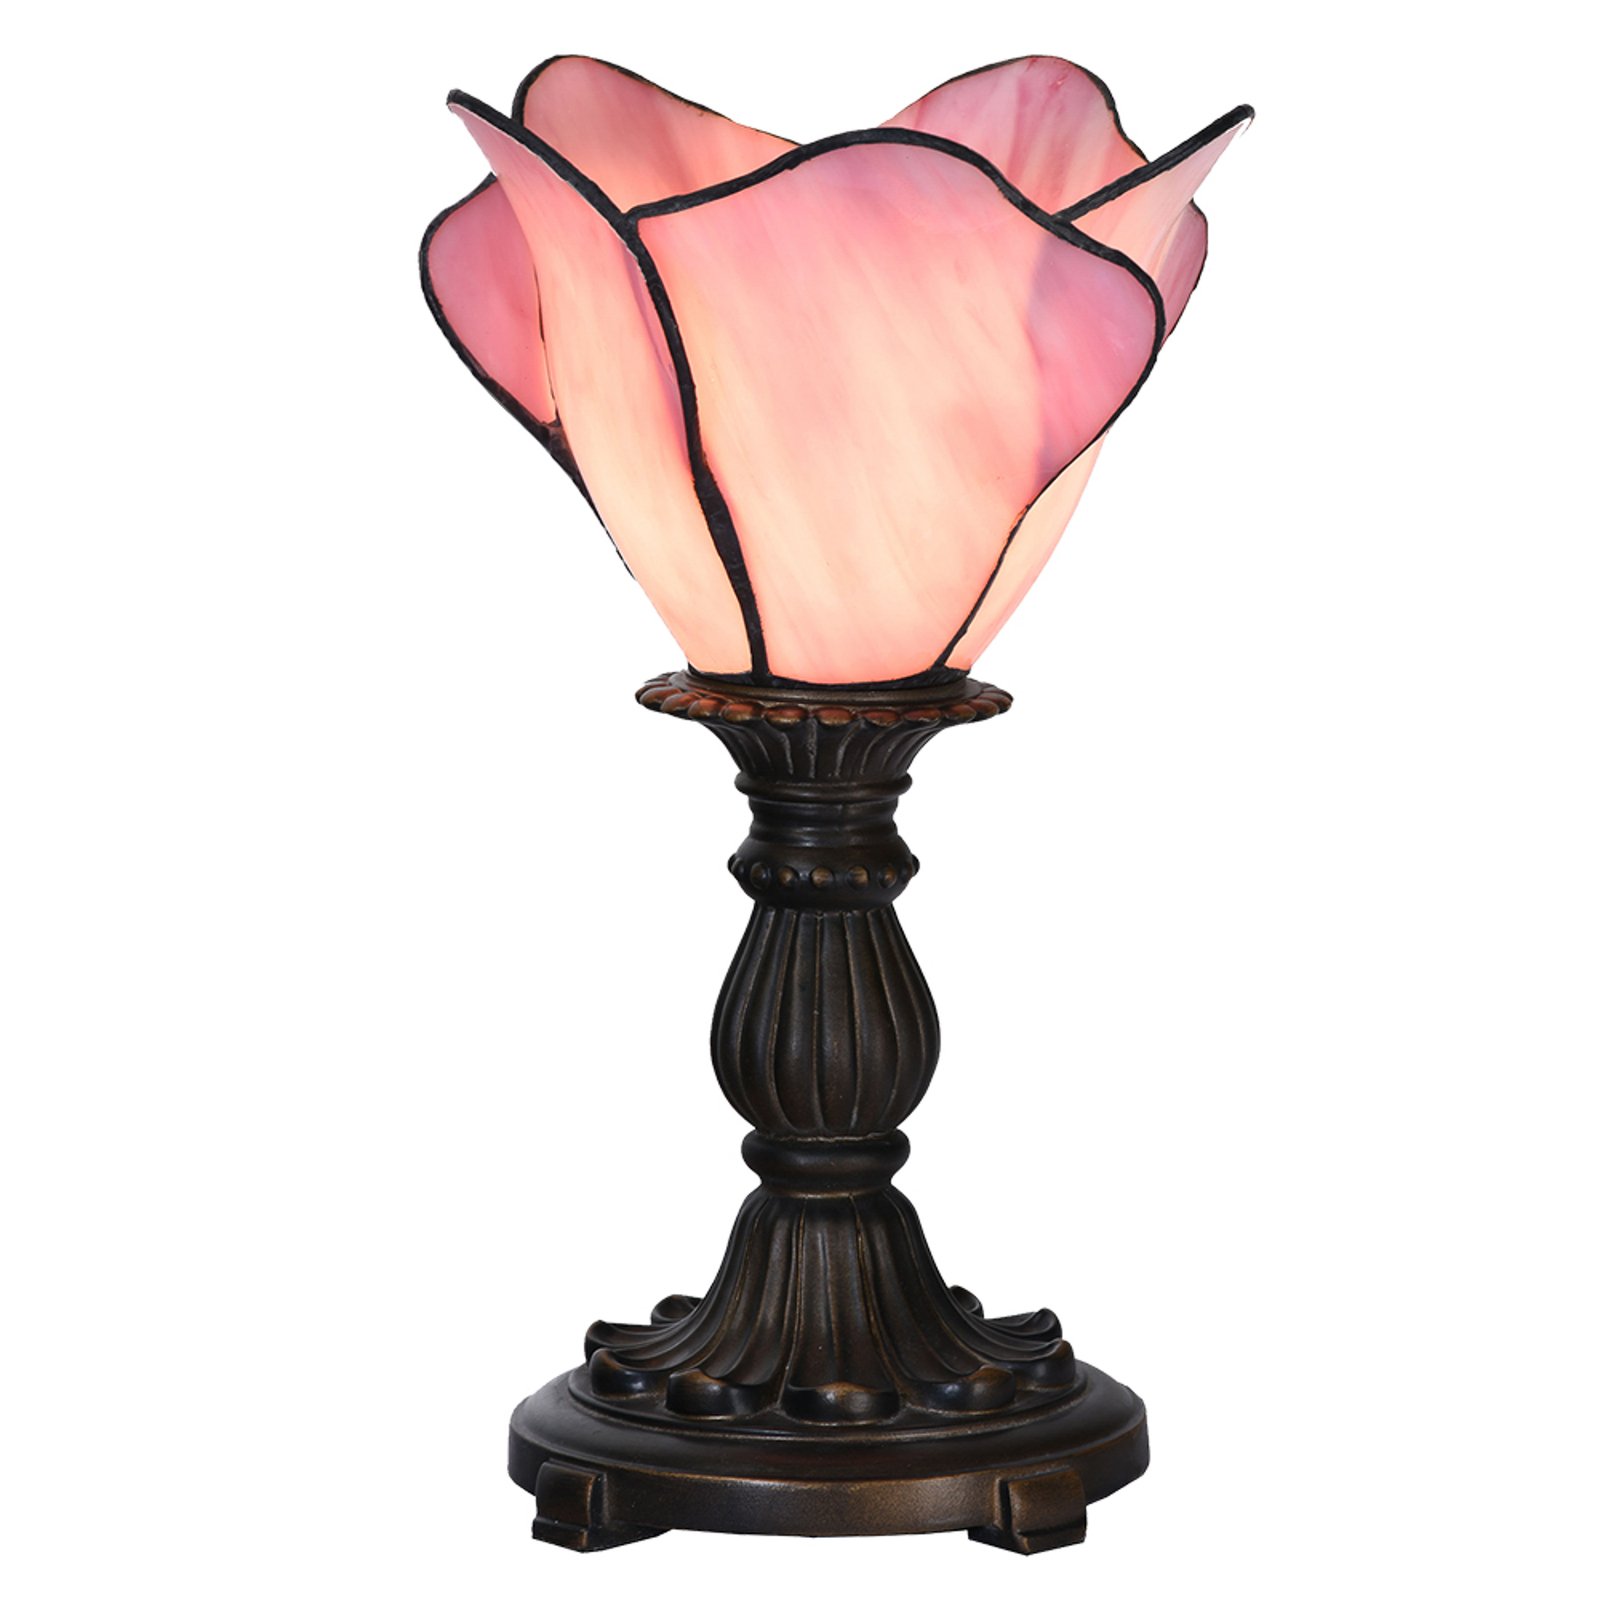 Pöytälamppu 5LL-6099 tiffany-tyyliä, roosa